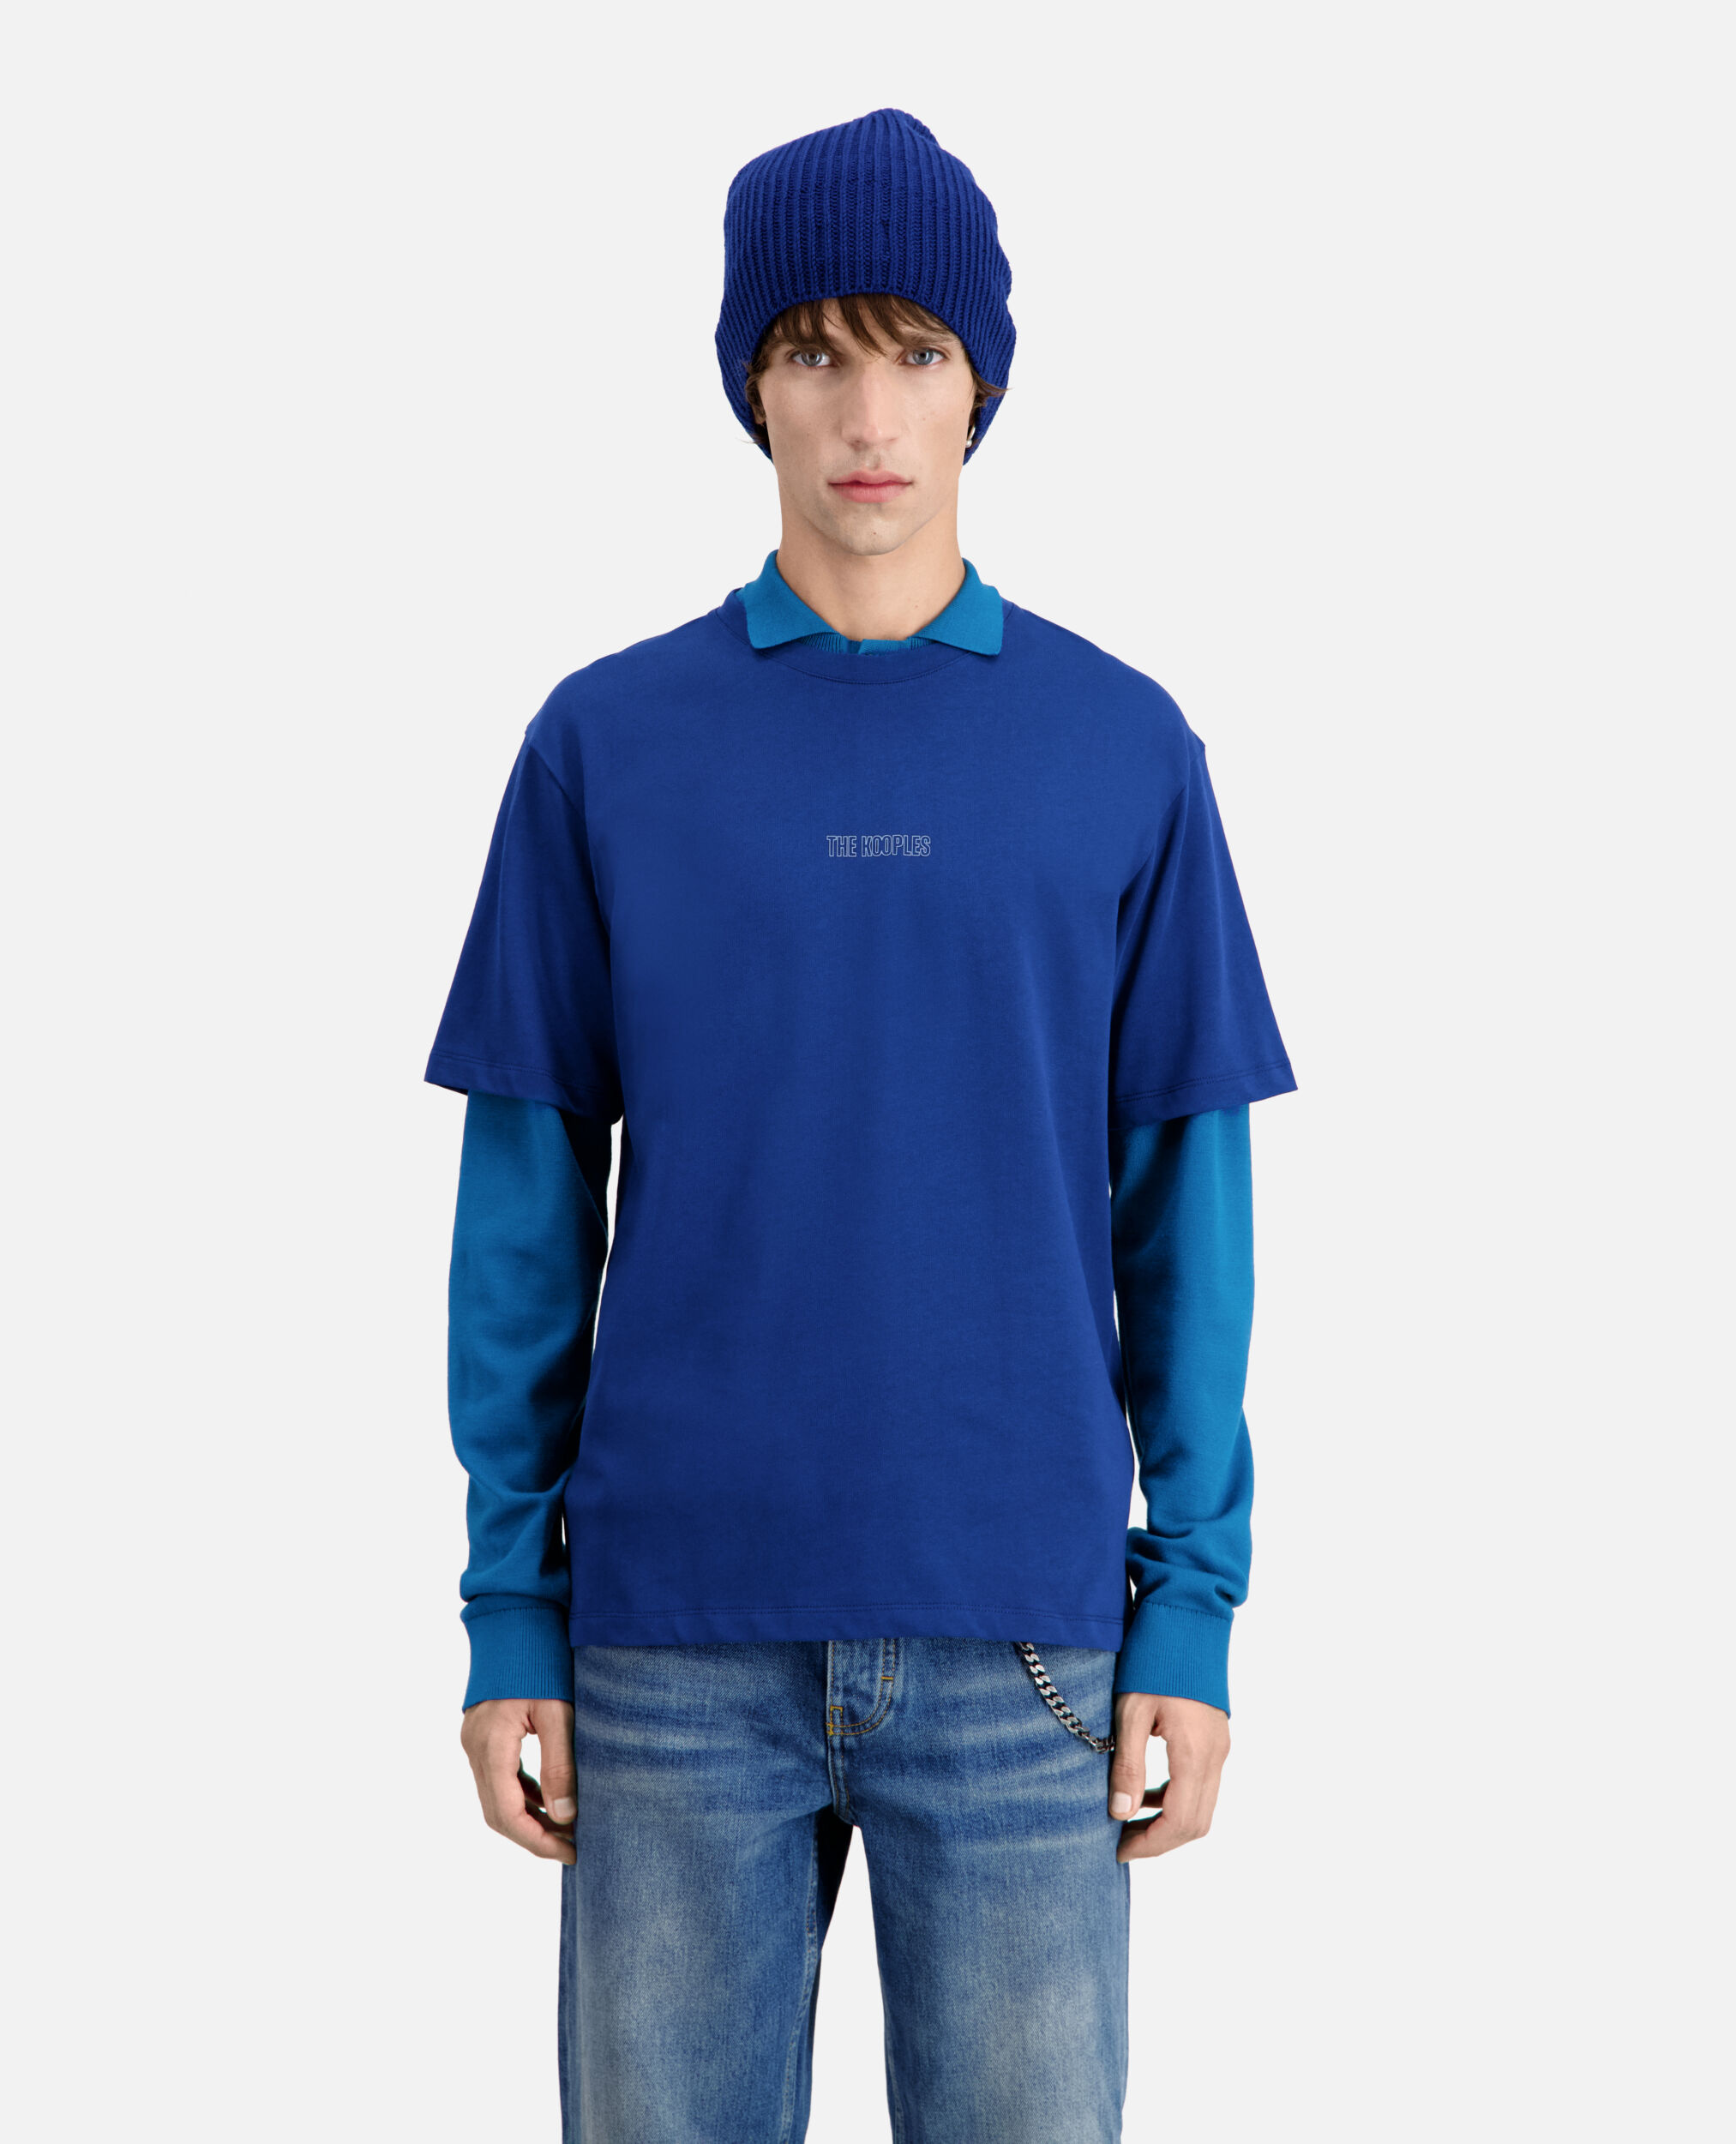 T-shirt Homme bleu vif avec logo, ROYAL BLUE - DARK NAVY, hi-res image number null